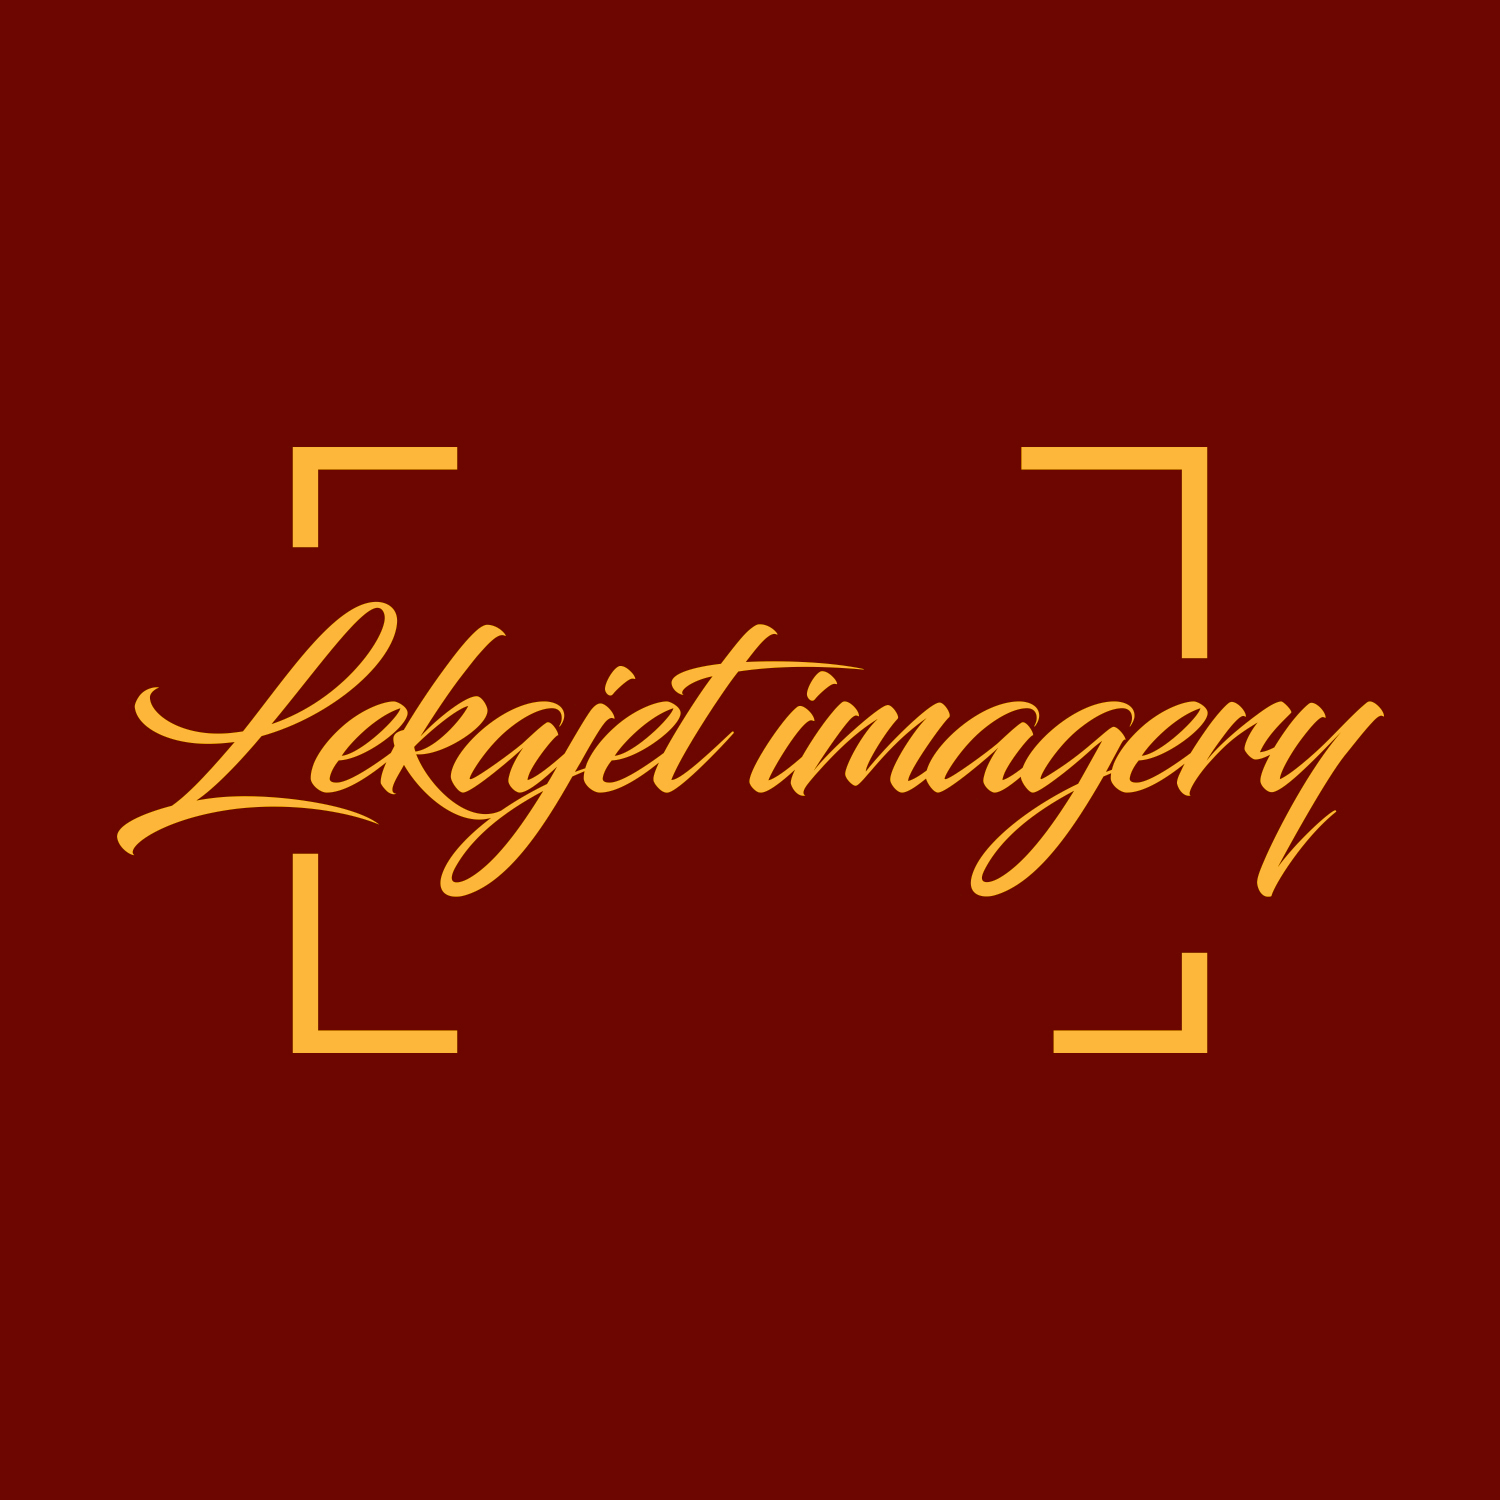 Lekajet imagery provider